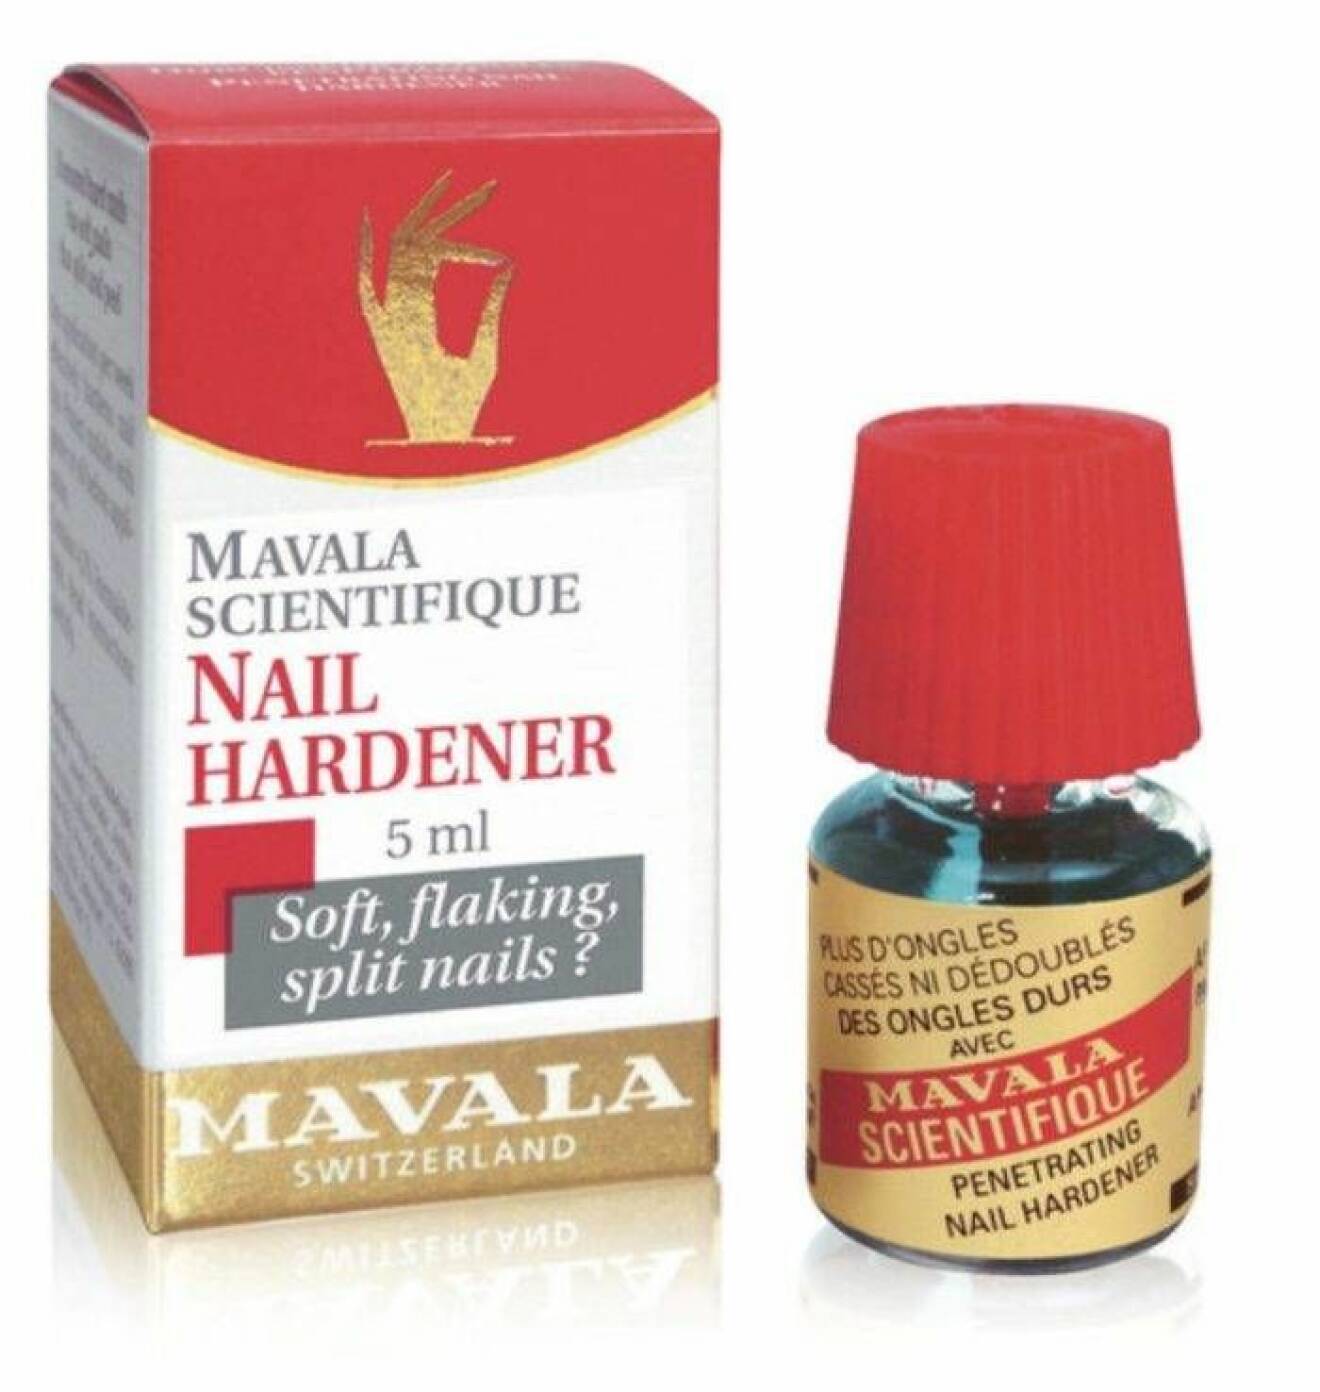 Nagelhärdare från Mavala för sköra naglar